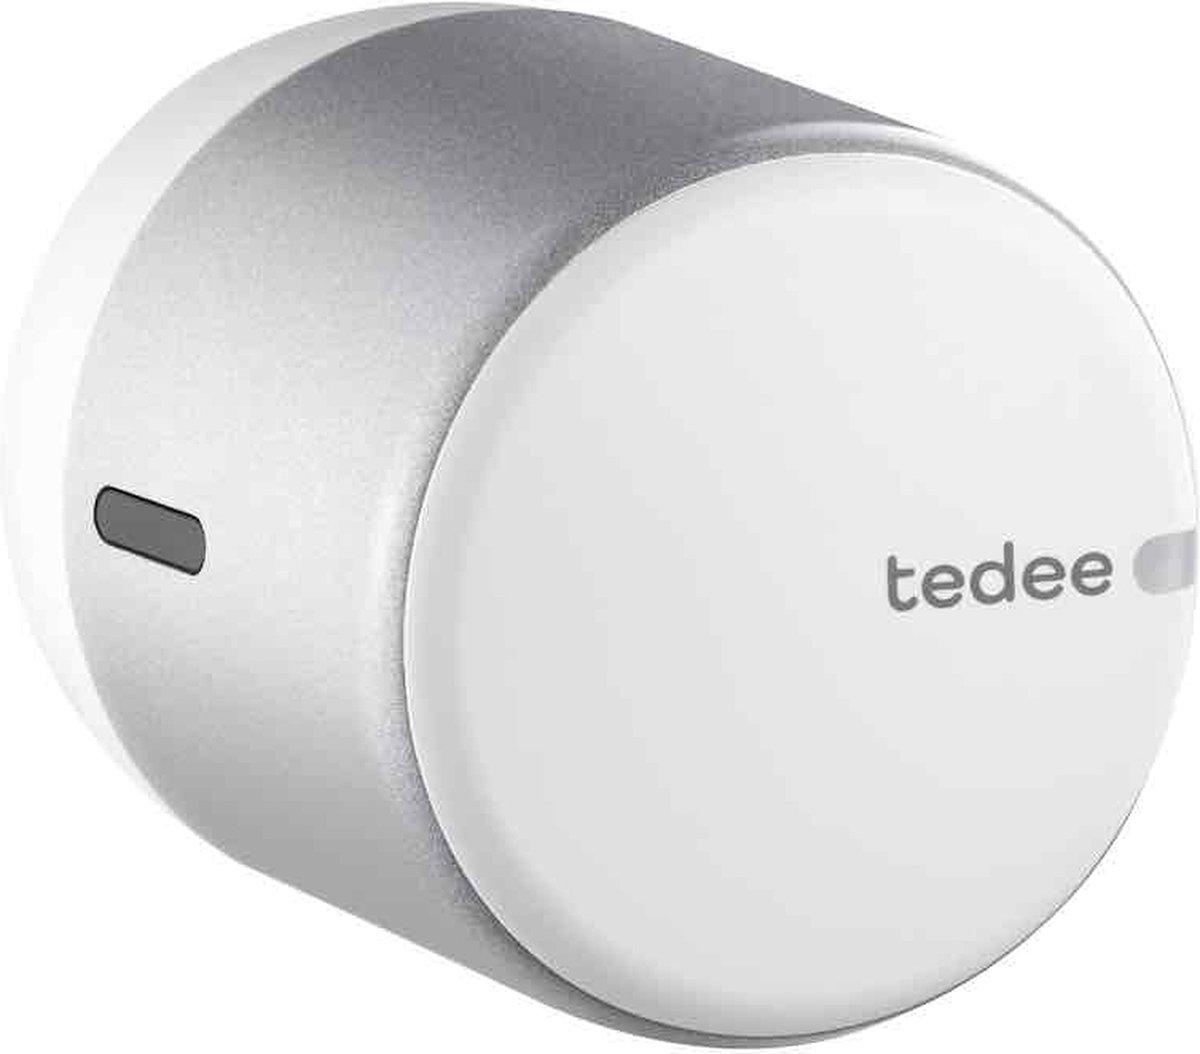 NEW Tedee GO Smartlock - White - Monteer over de huidige sleutel - Bluetooth - Tedee